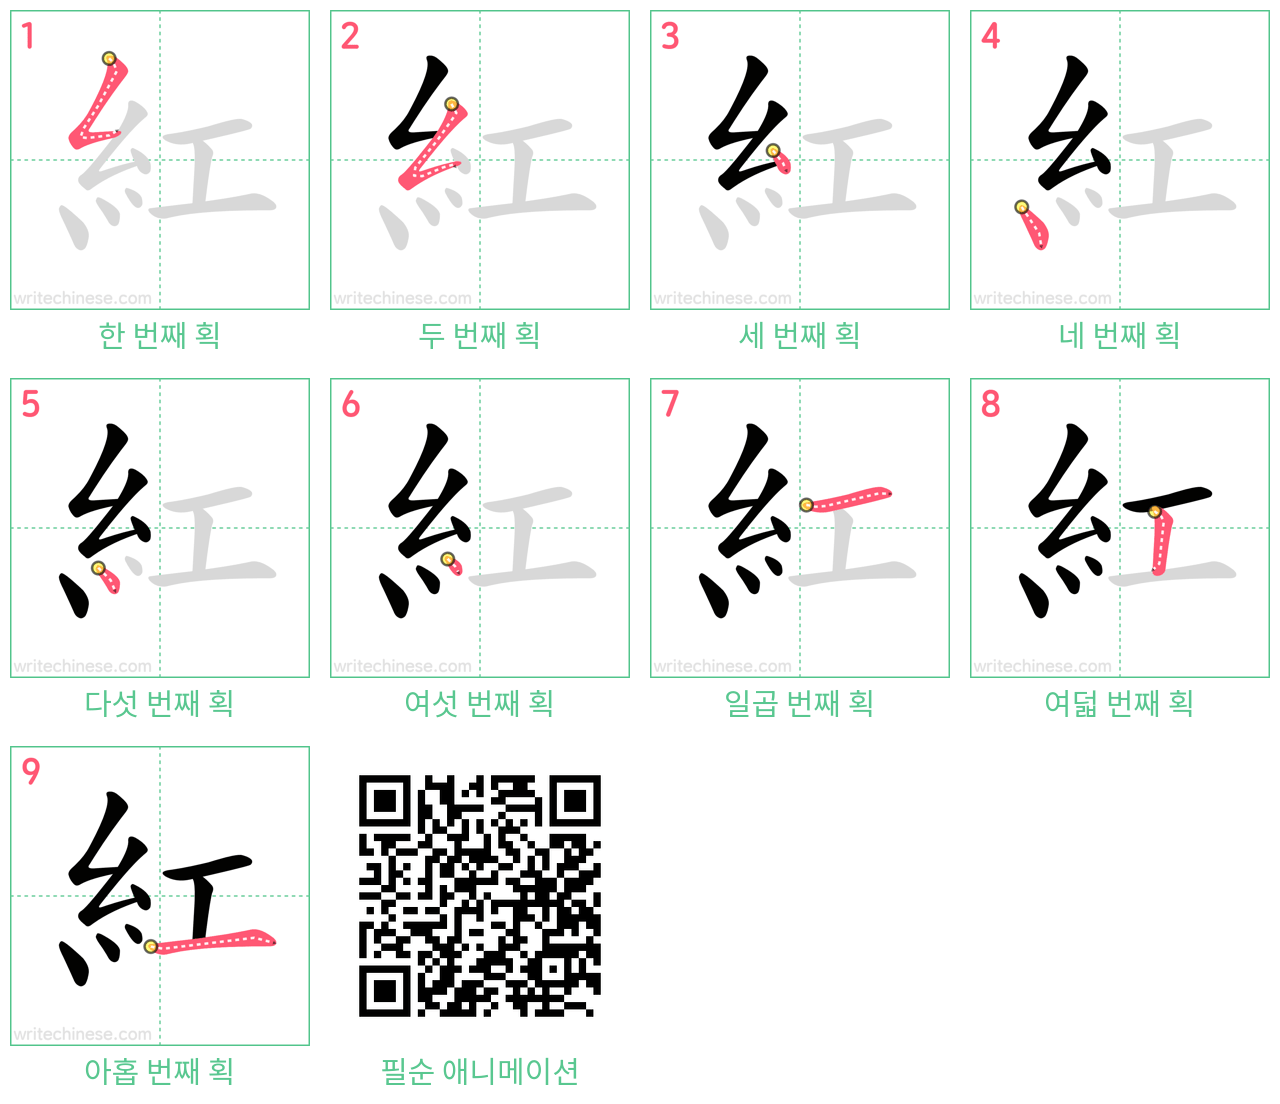 紅 step-by-step stroke order diagrams